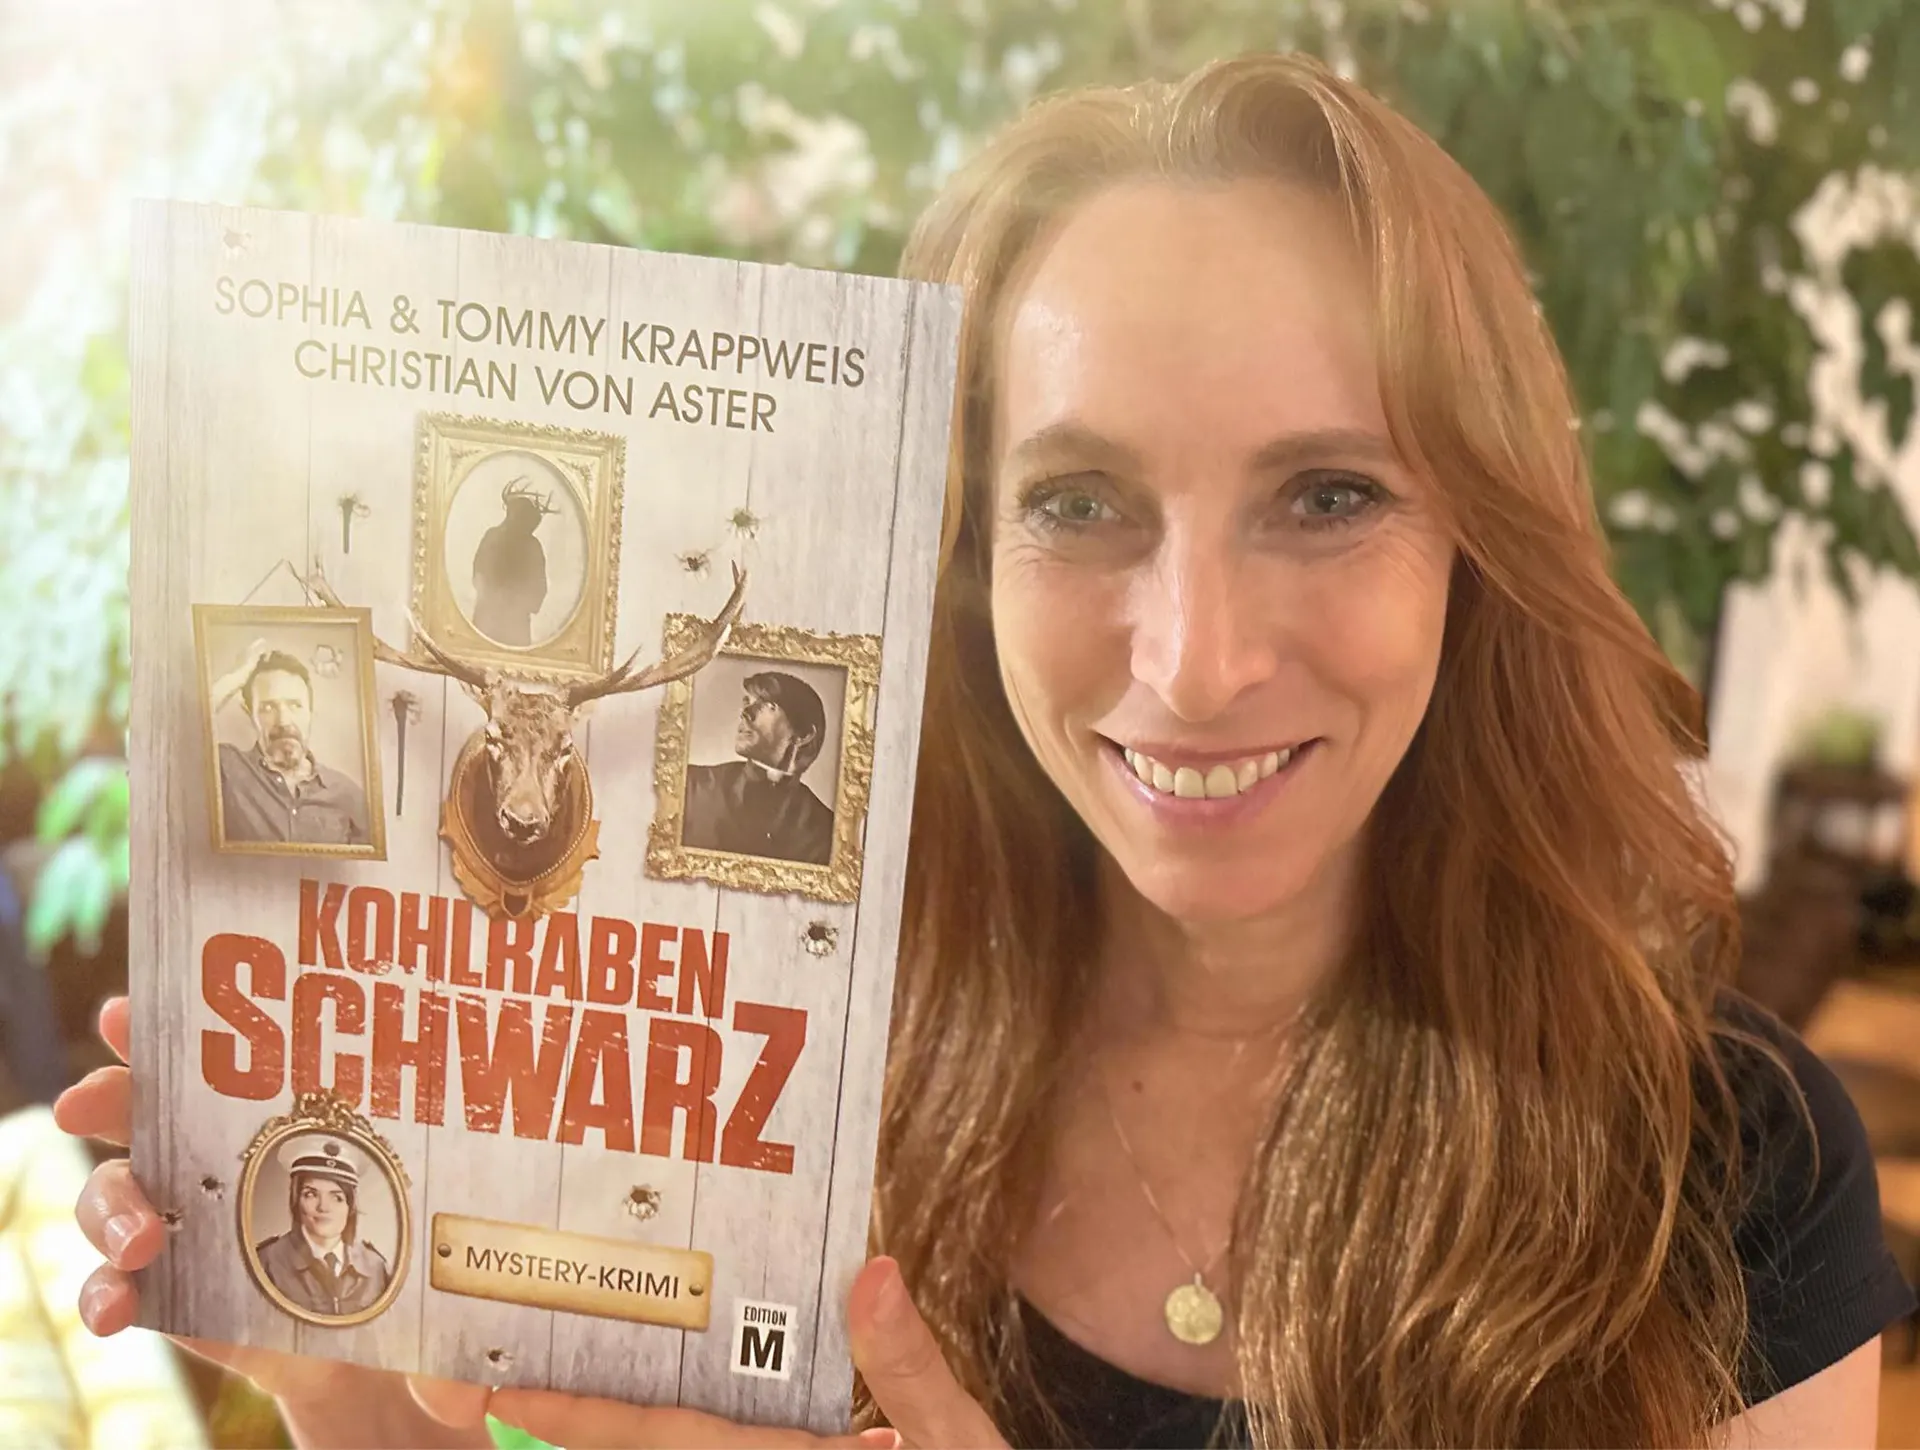 Sophia Krappweis hält ein Kohlrabenschwarz-Buch in die Kamera, auf dem ihr Name als Autorin steht.